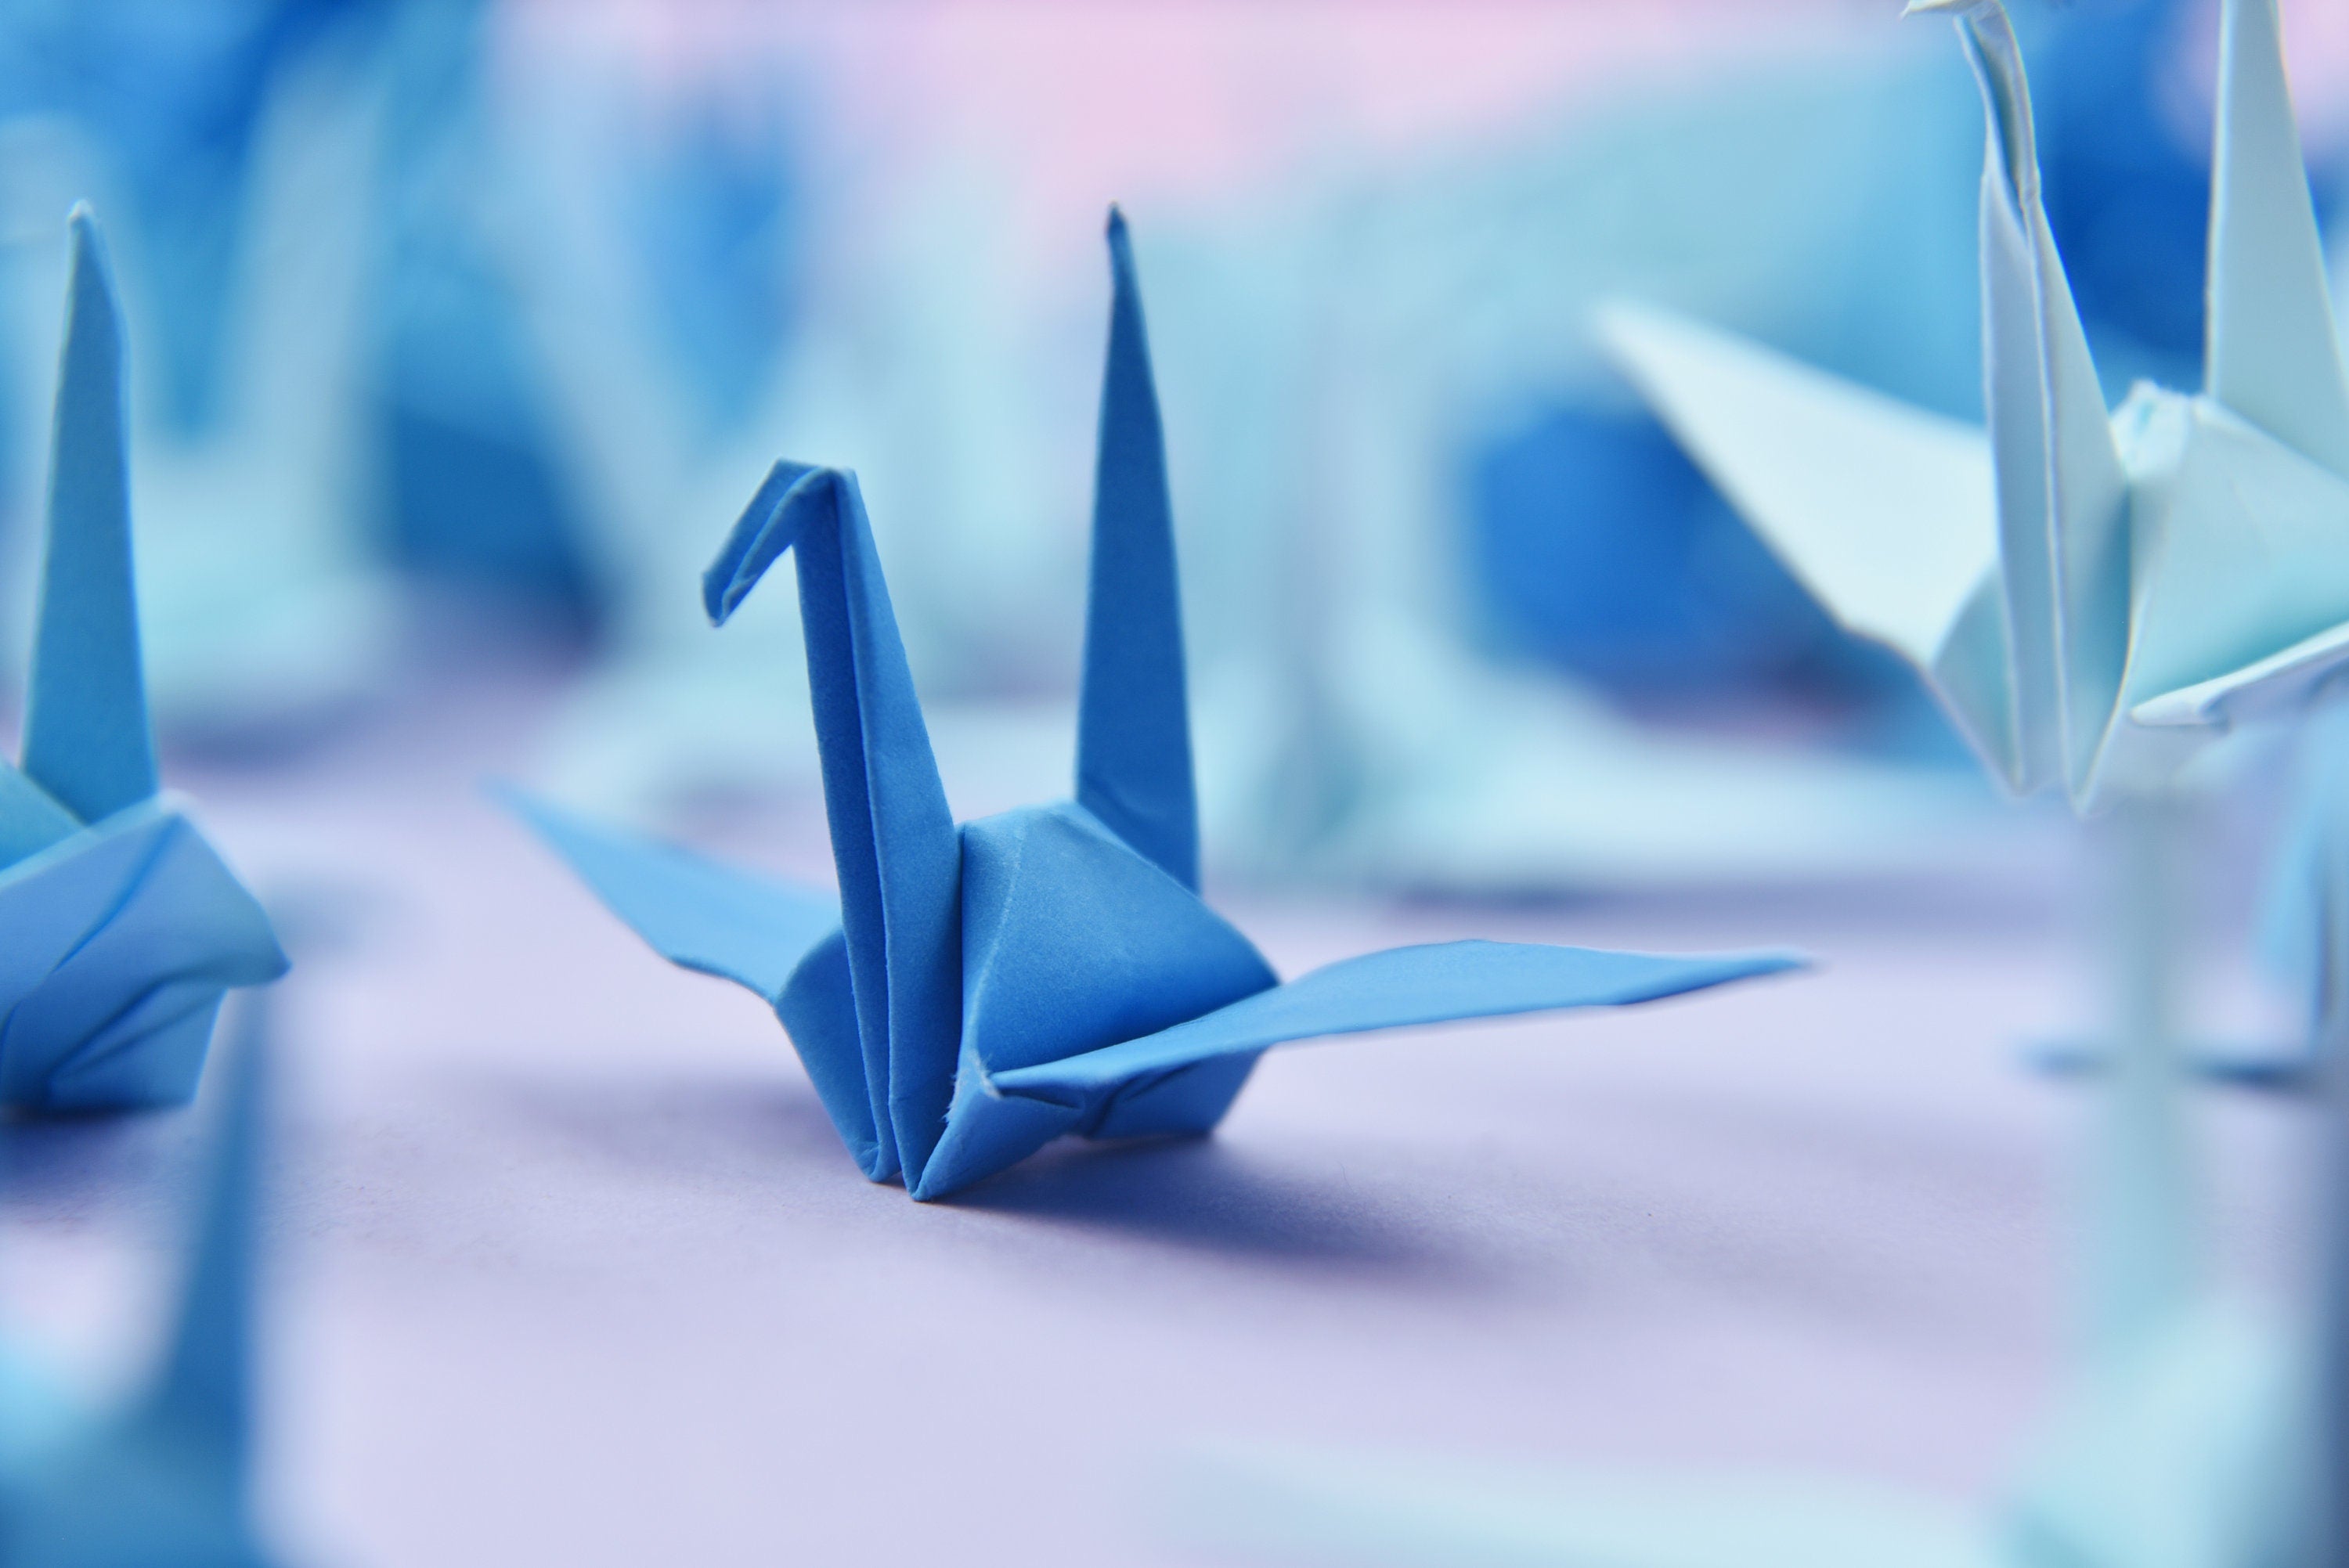 1000 grullas de papel de origami de tono azul - 3x3 pulgadas 7,5 cm - para decoración de bodas, regalo de aniversario, San Valentín, telón de fondo